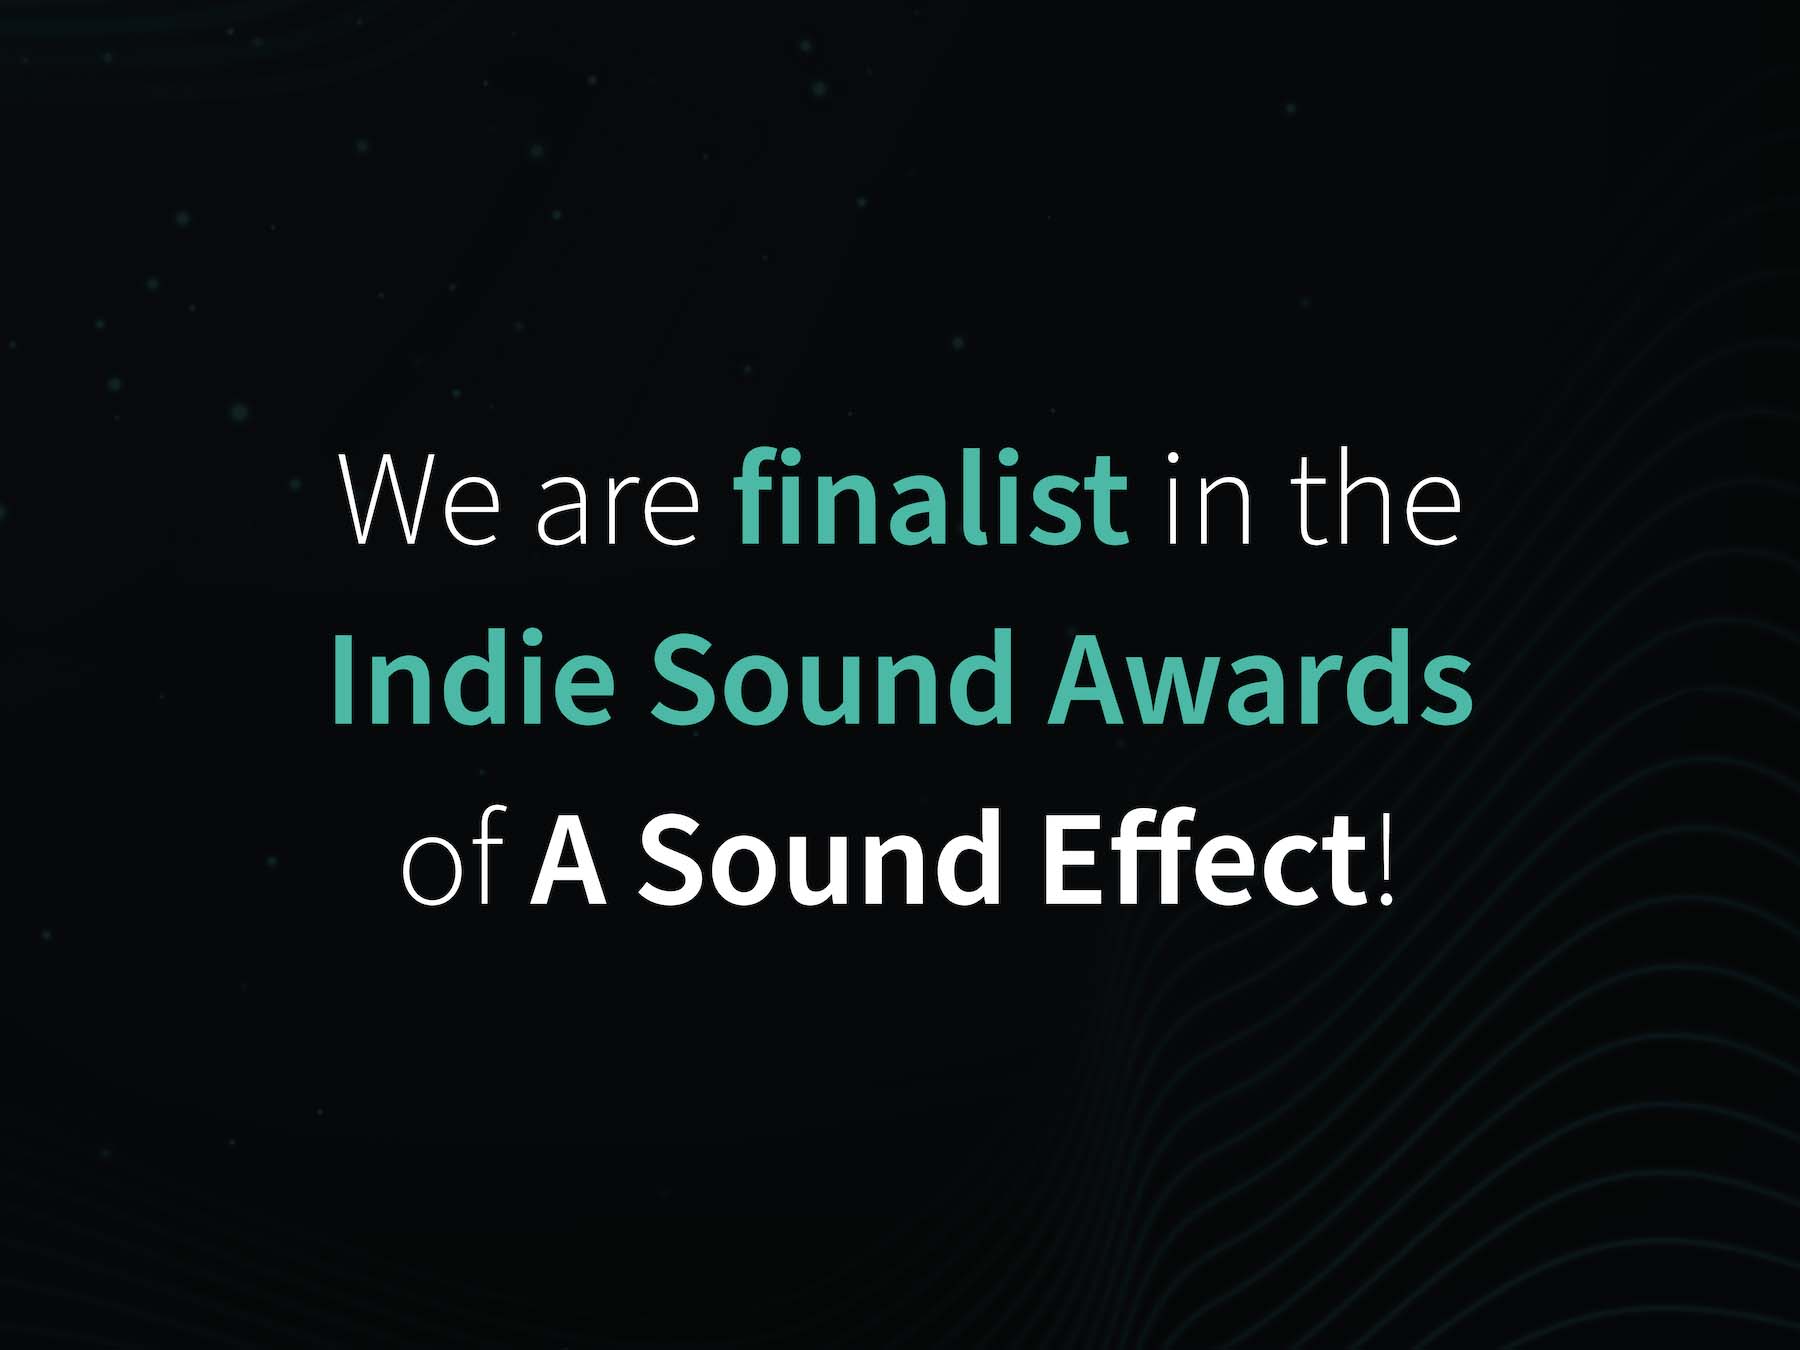 A Sound Effect Indie Sound Awards